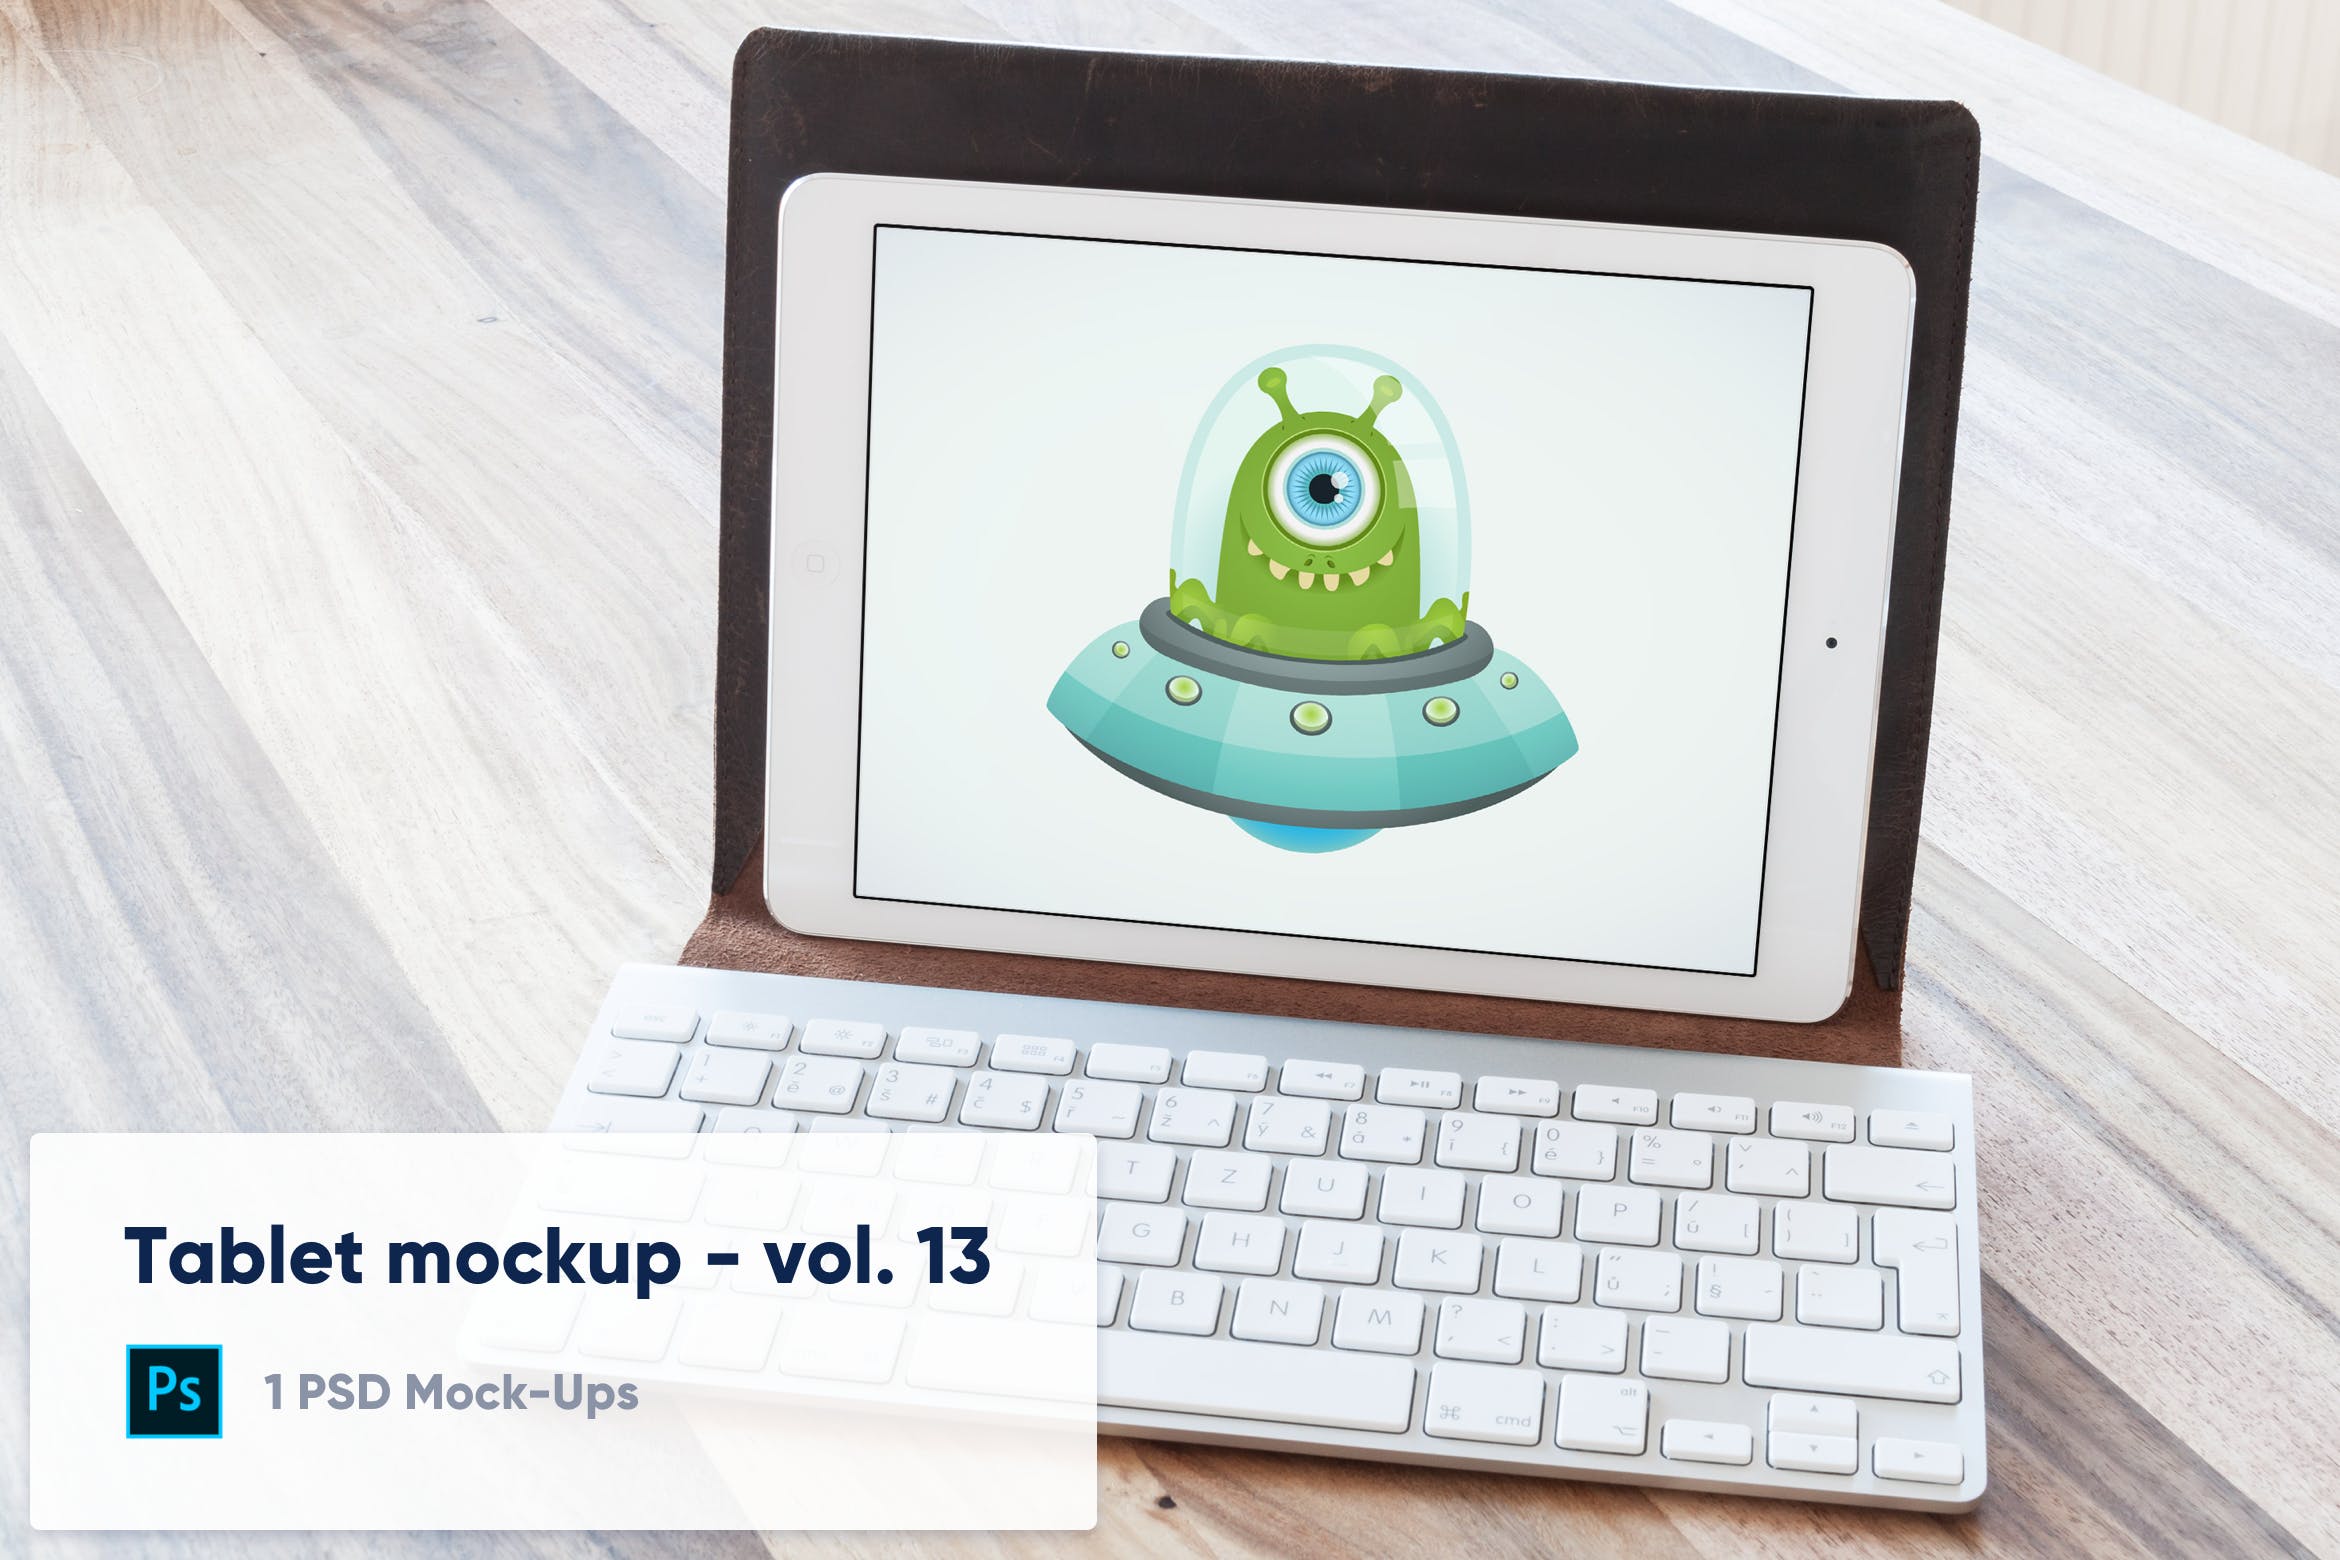 附带键盘套的iPad平板电脑屏幕预览第一素材精选样机模板v13 Tablet in Keyboard Case Desk Mockup – Vol. 13插图